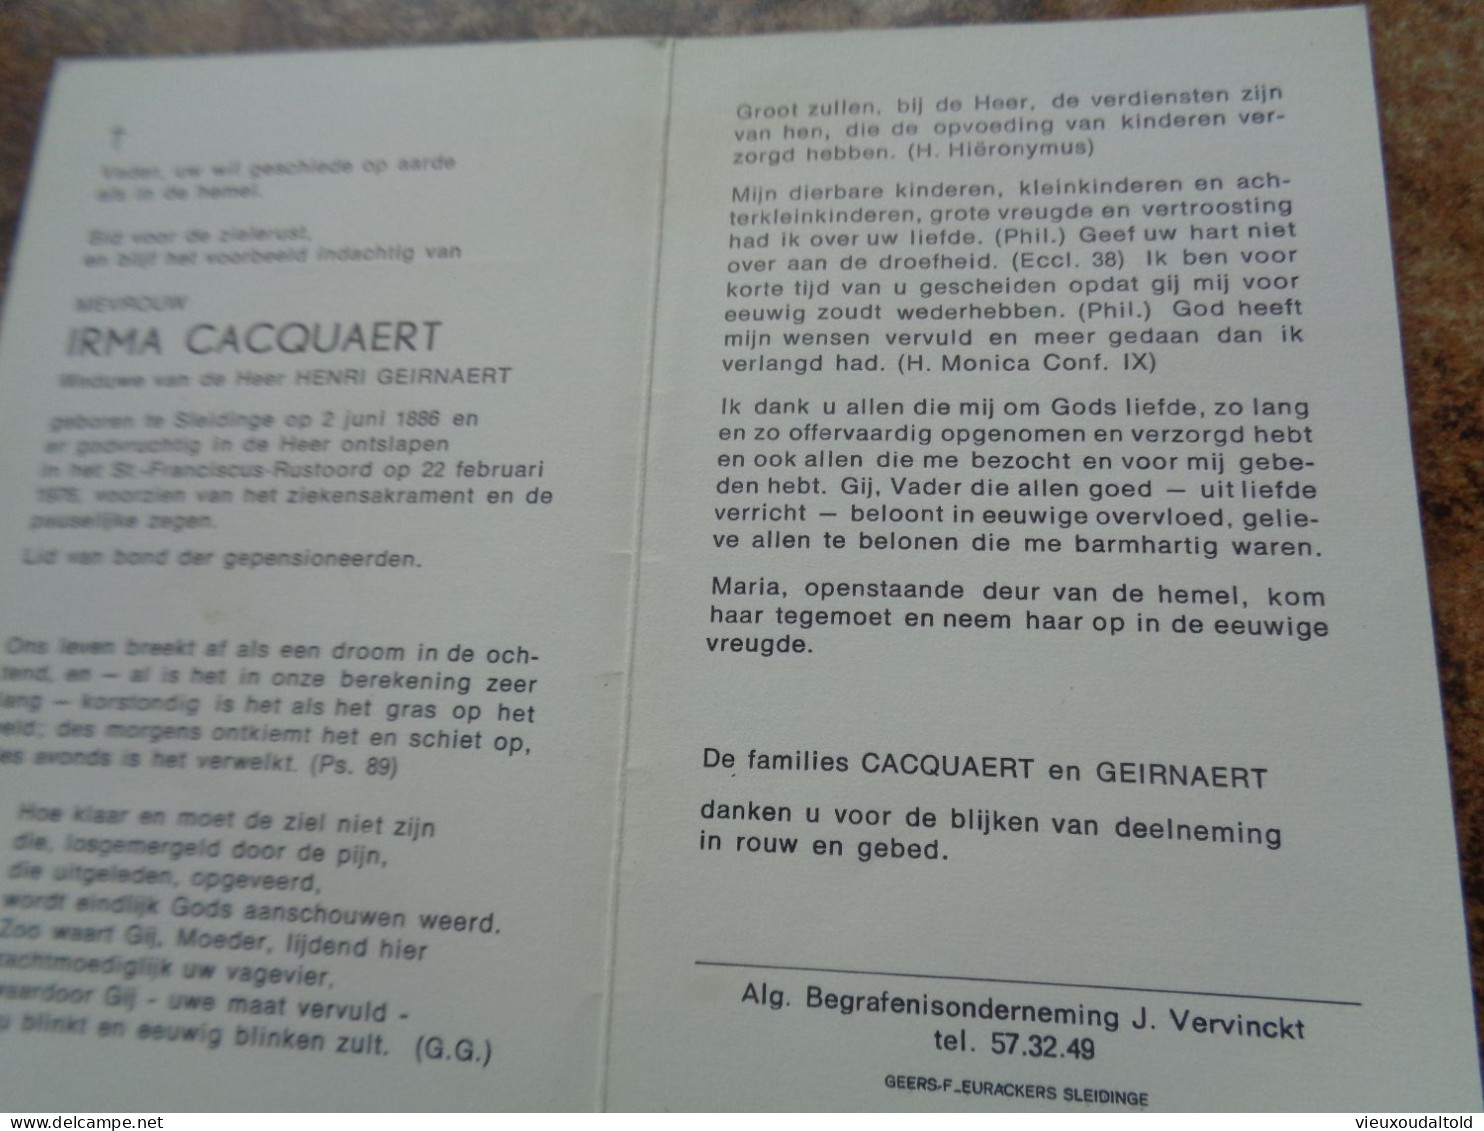 Doodsprentje/Bidprentje  IRMA CACQUAERT   Sleidinge 1886-1976  (Wwe Henri GEIRNAERT) - Religion & Esotericism